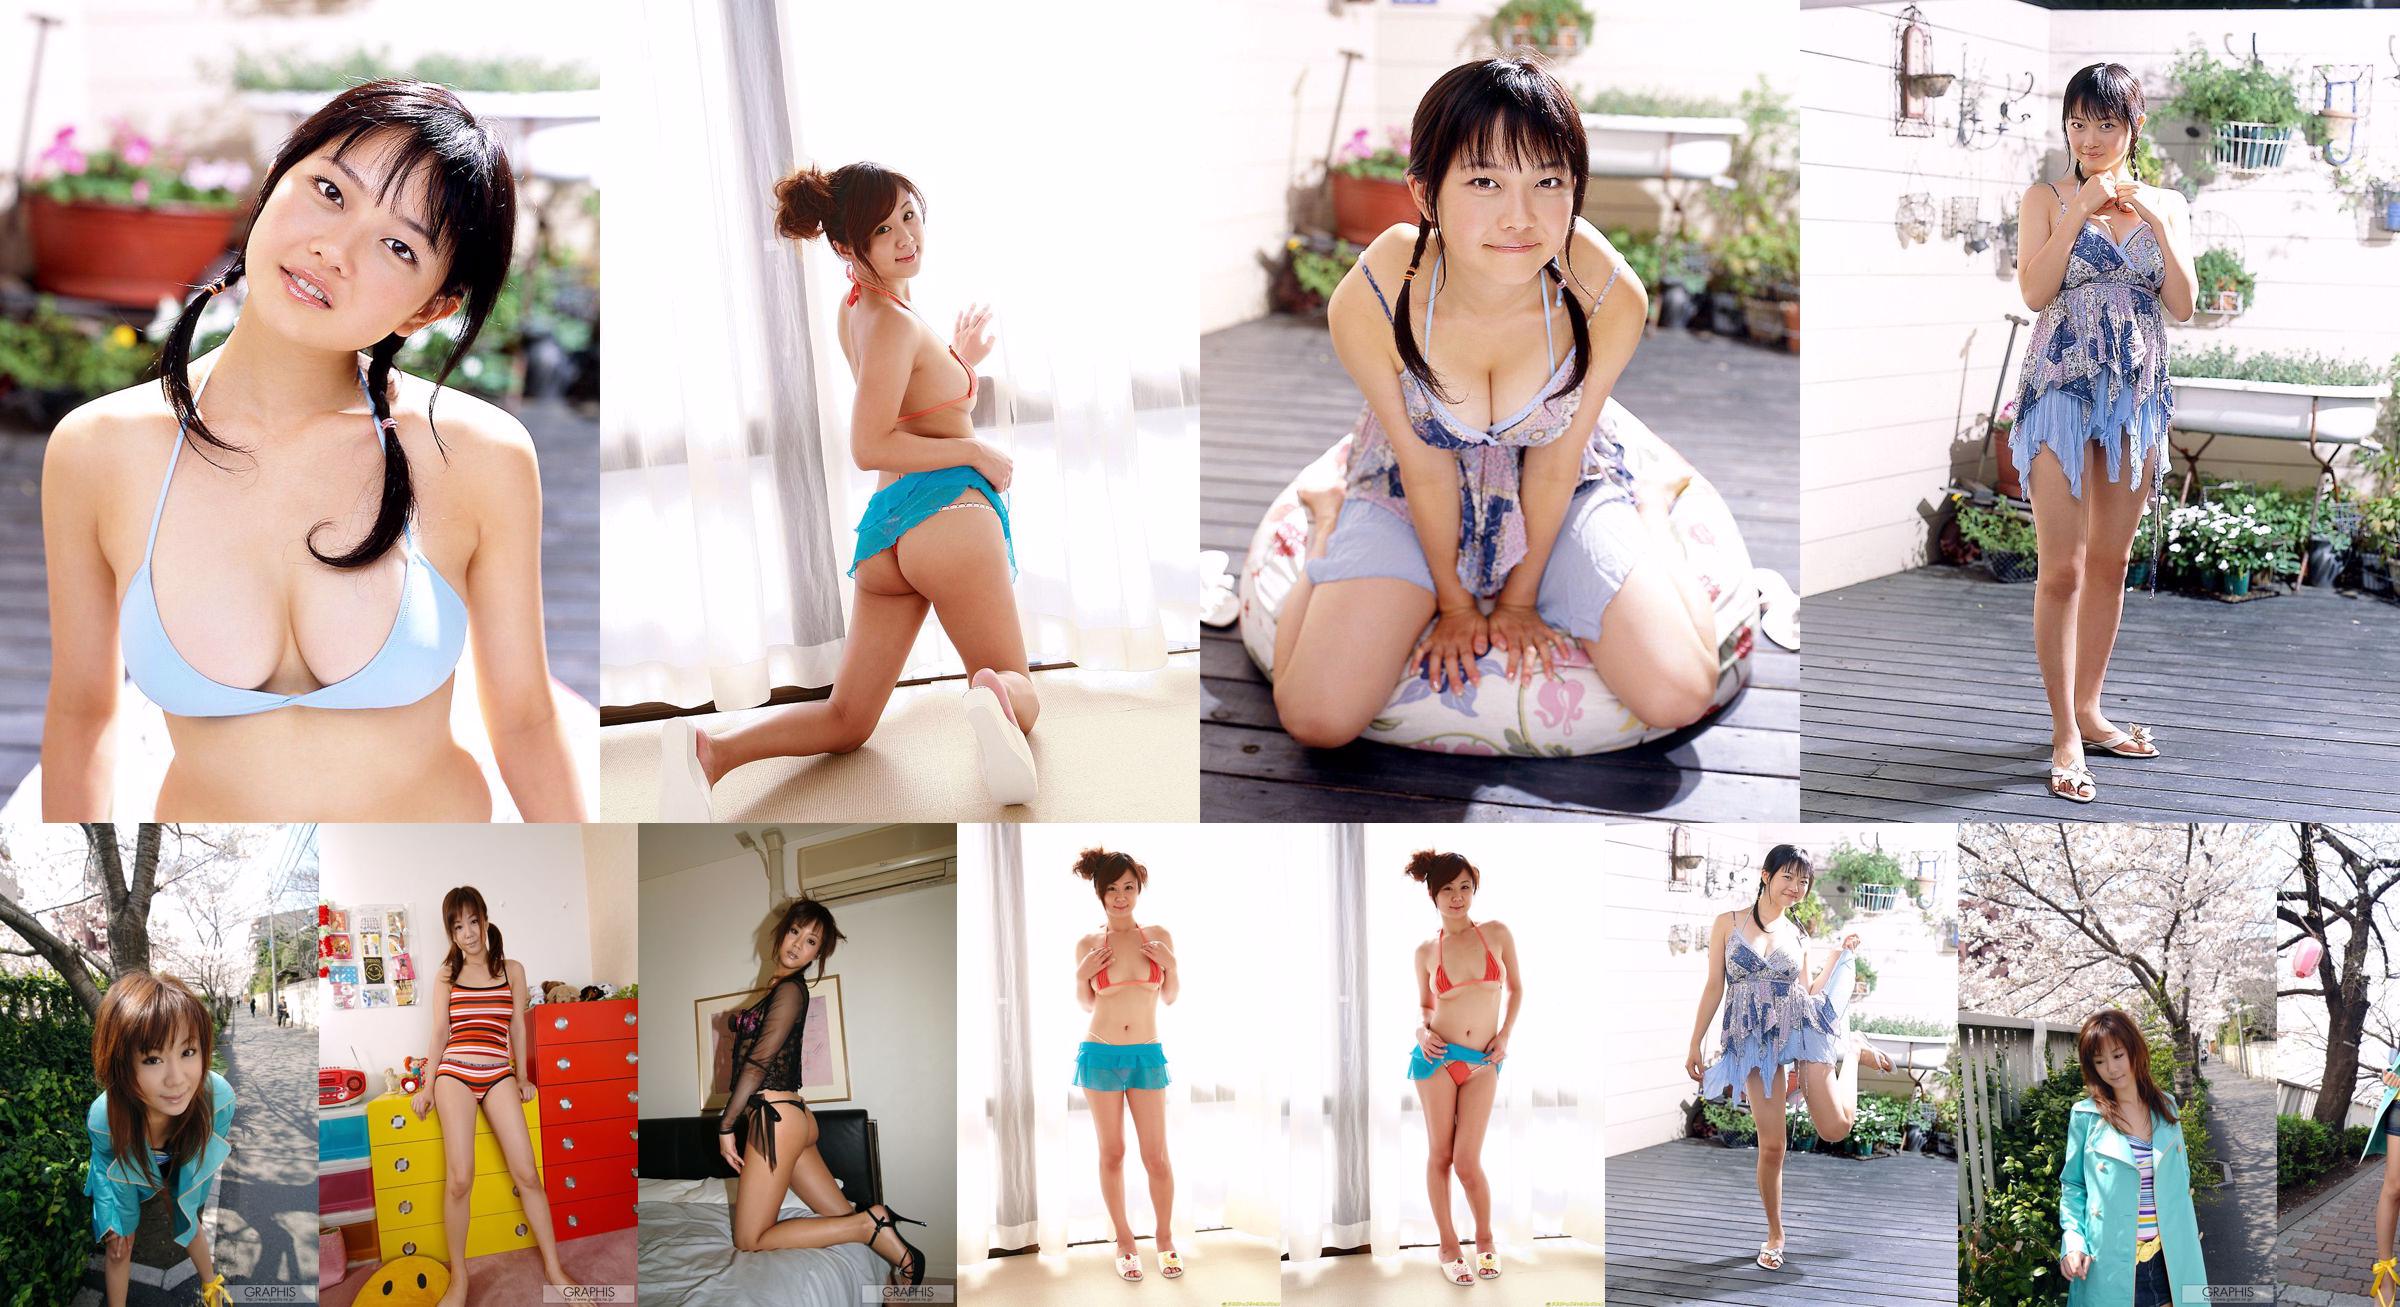 Maki Hoshino / Maki Hoshino "Juicy" [Graphis] Gals No.3cc0b5 Halaman 1